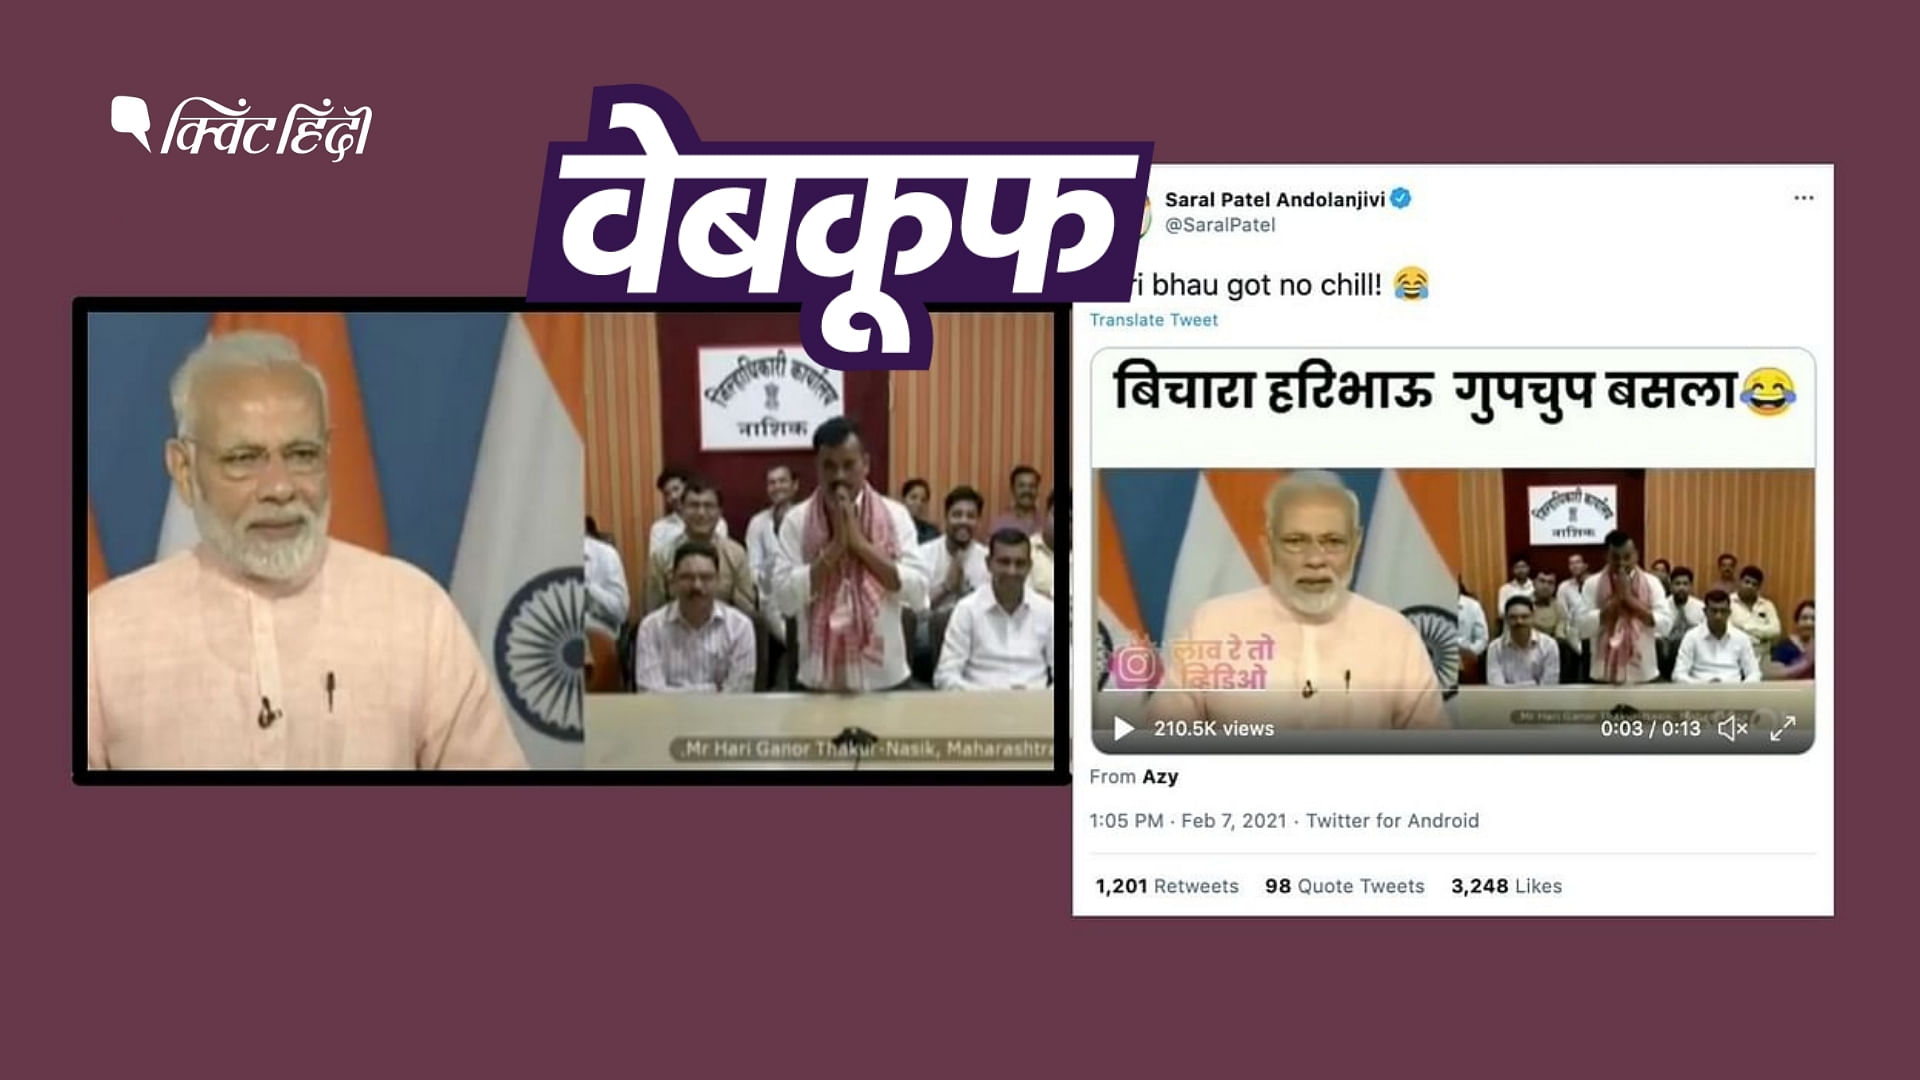 नरेंद्र मोदी का एक पुराना वीडियो एडिट कर गलत दावे के साथ वायरल